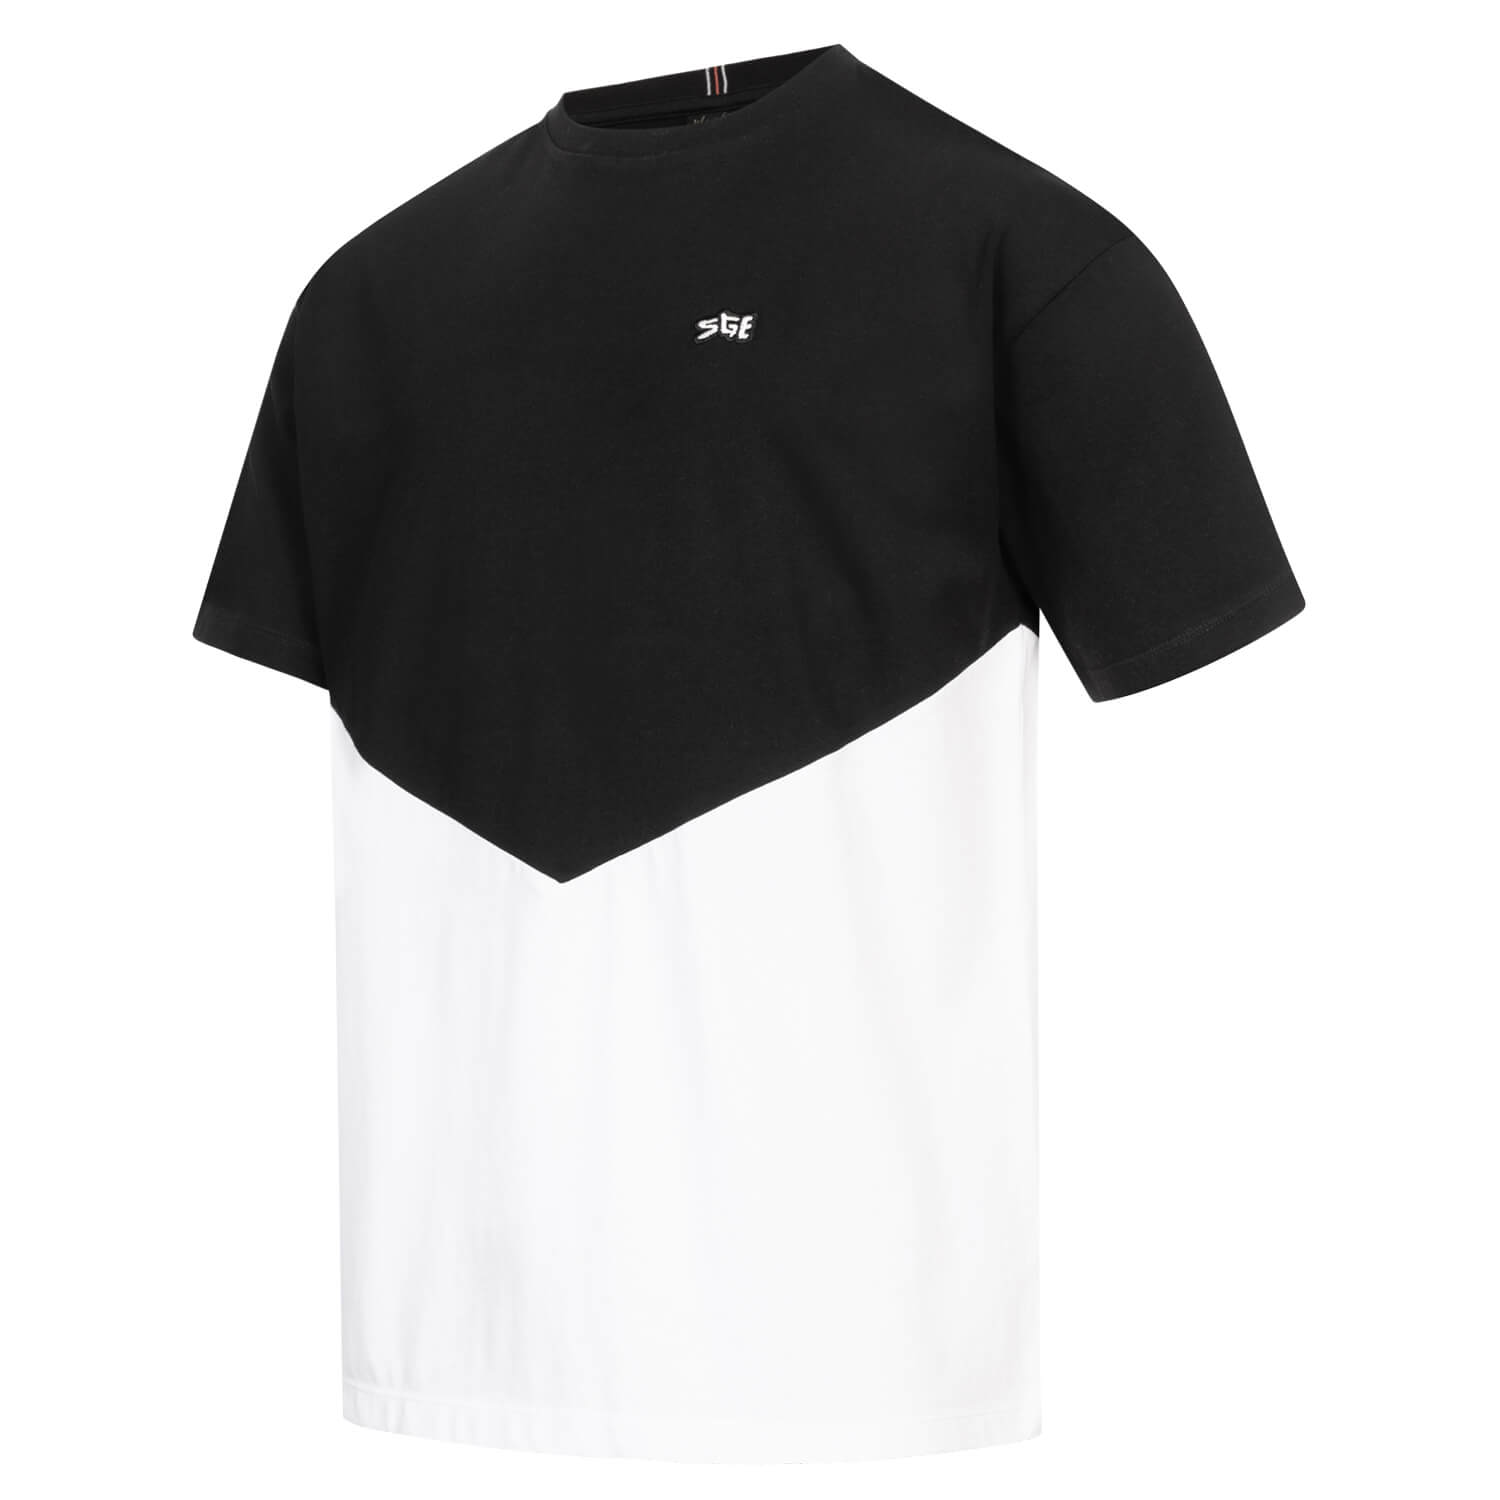 Bild 3: T-Shirt SGE Black & White